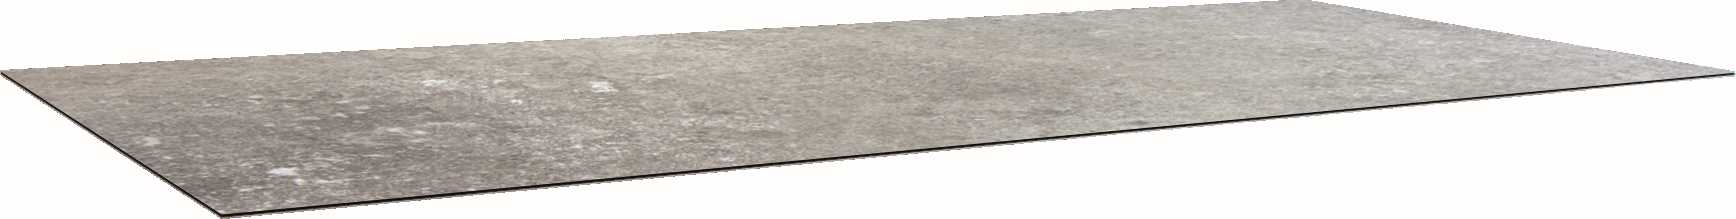 STERN Tischplatte SILVERSTAR 2.0 200x100 cm Dekor Vintage stone